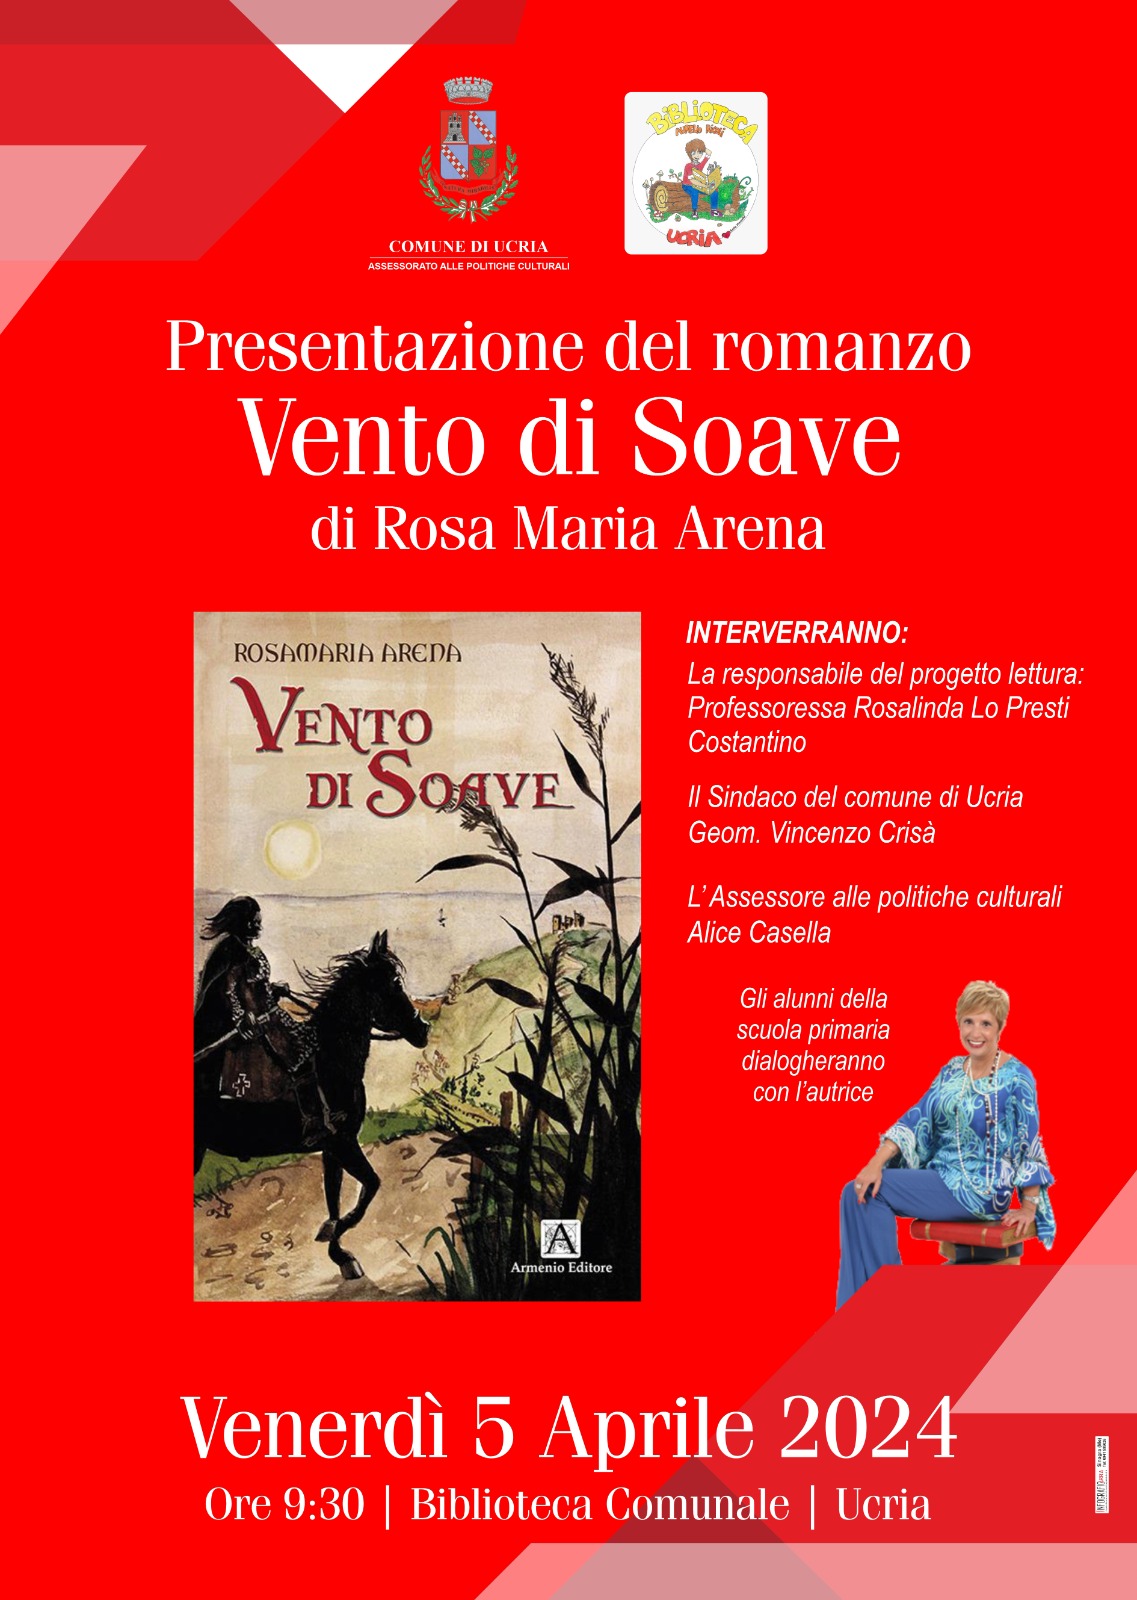 Ucria – Domani la presentazione del romanzo “Vento di Soave” di Rosa Maria Arena